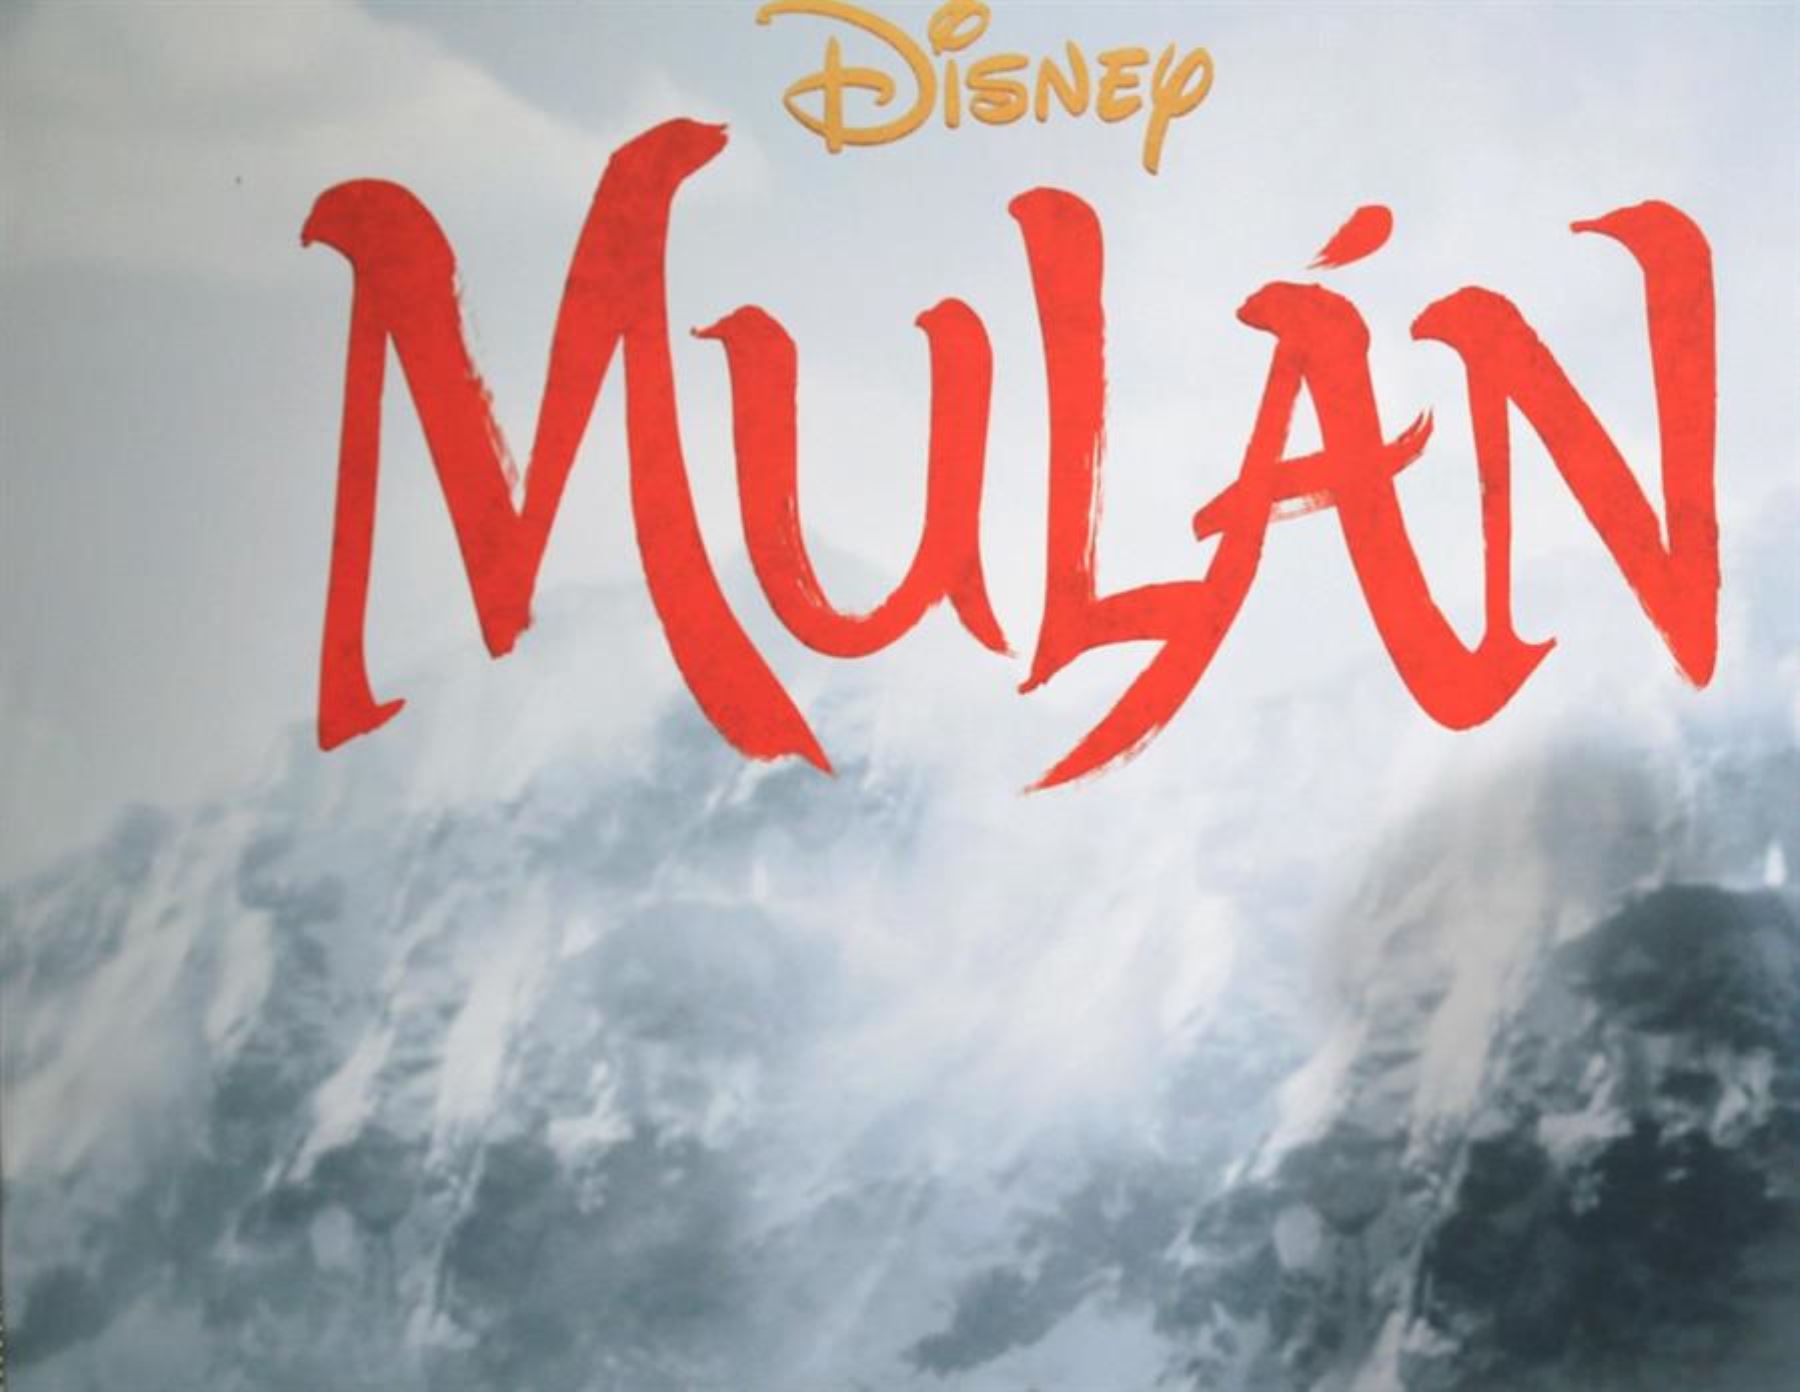 Posponen estrenos de "Mulan", "Star Wars" y "Avatar" por el coronavirus.